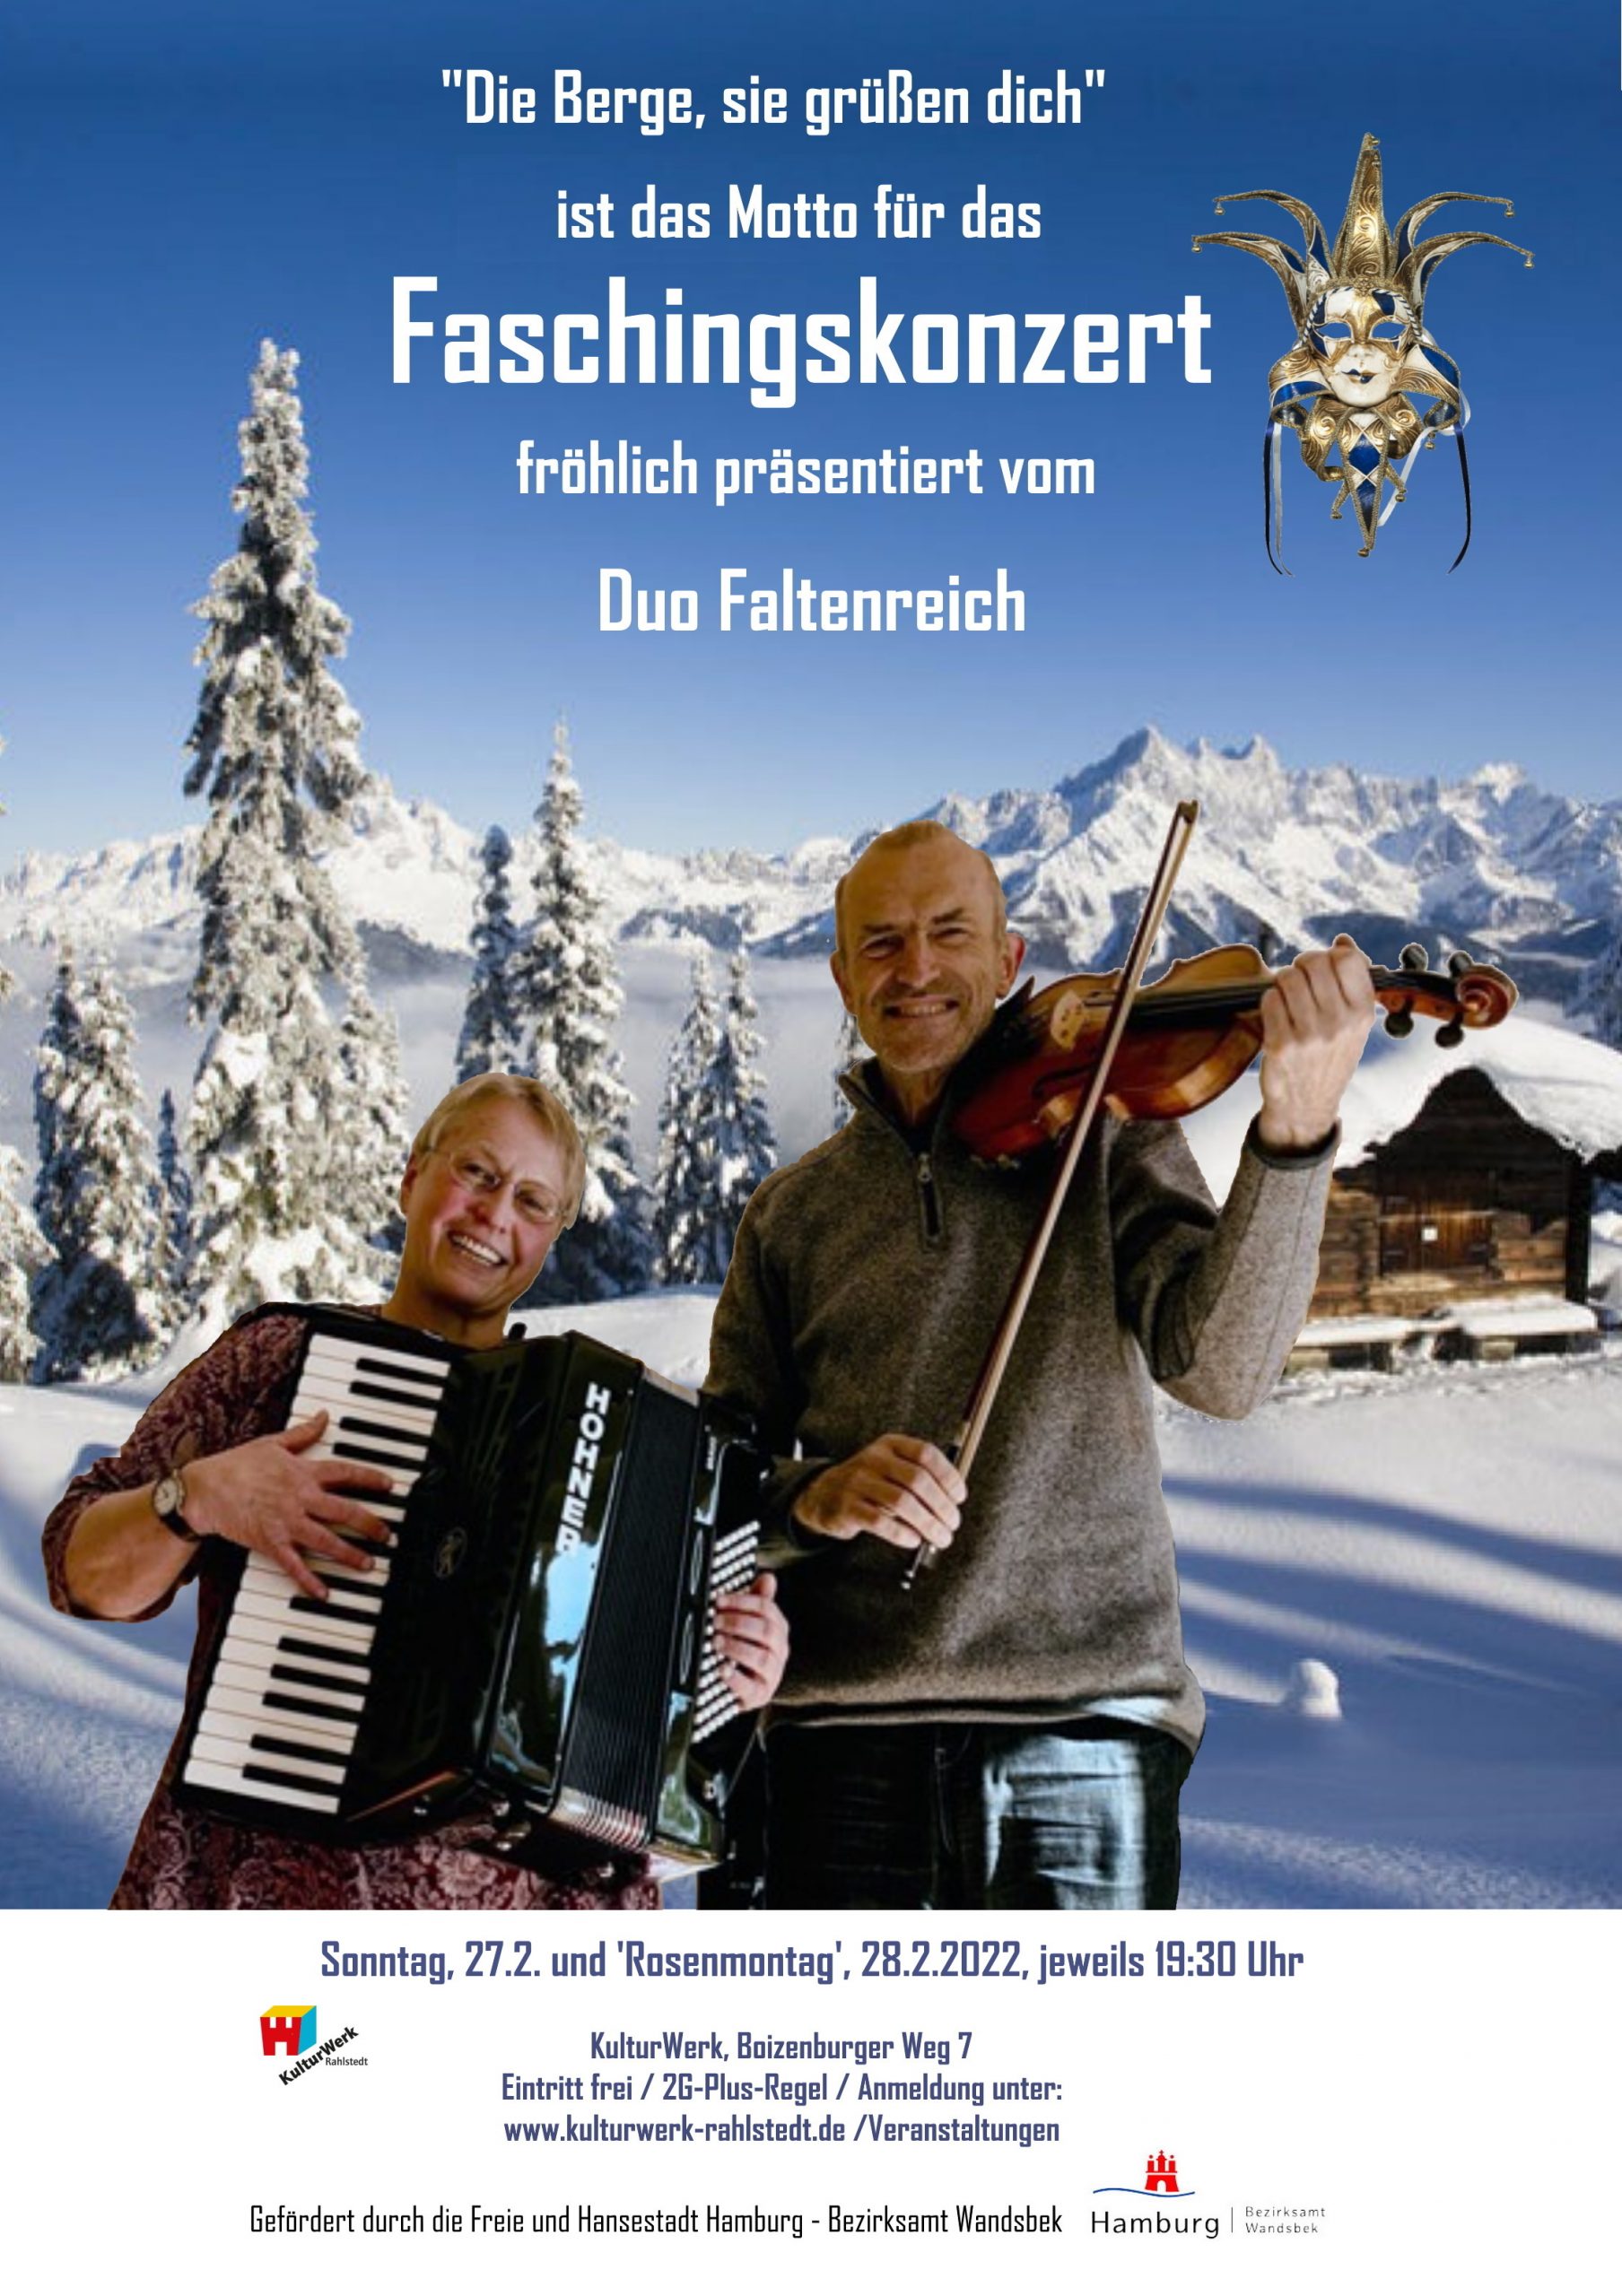 Faschingskonzert mit dem Duo Faltenreich